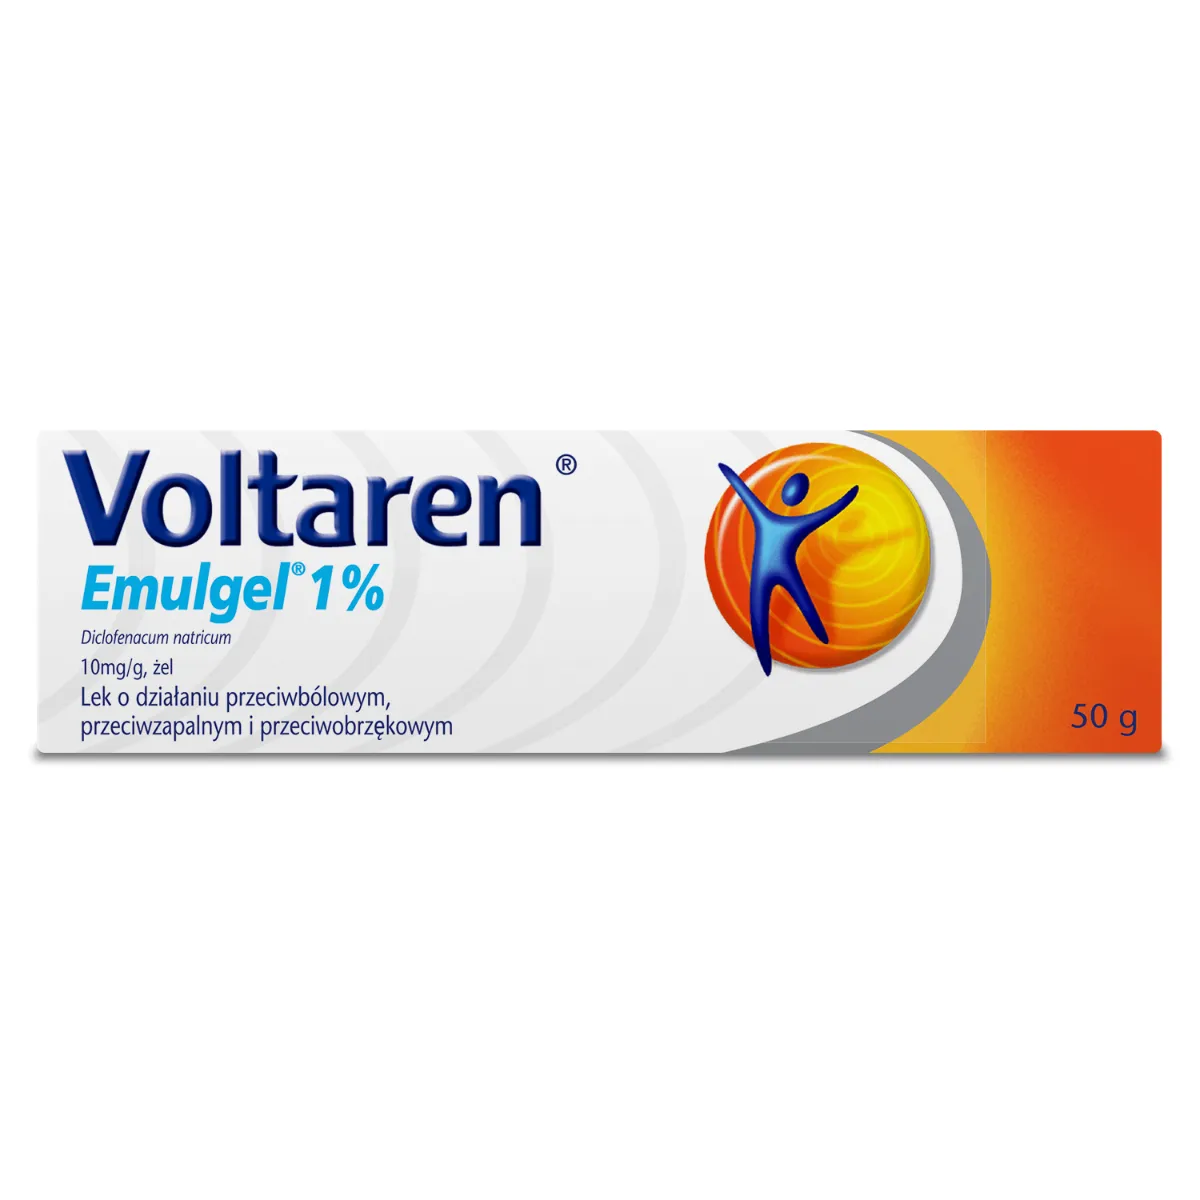 Voltaren Emulgel, 10 mg/g żel, import równoległy, 50 g